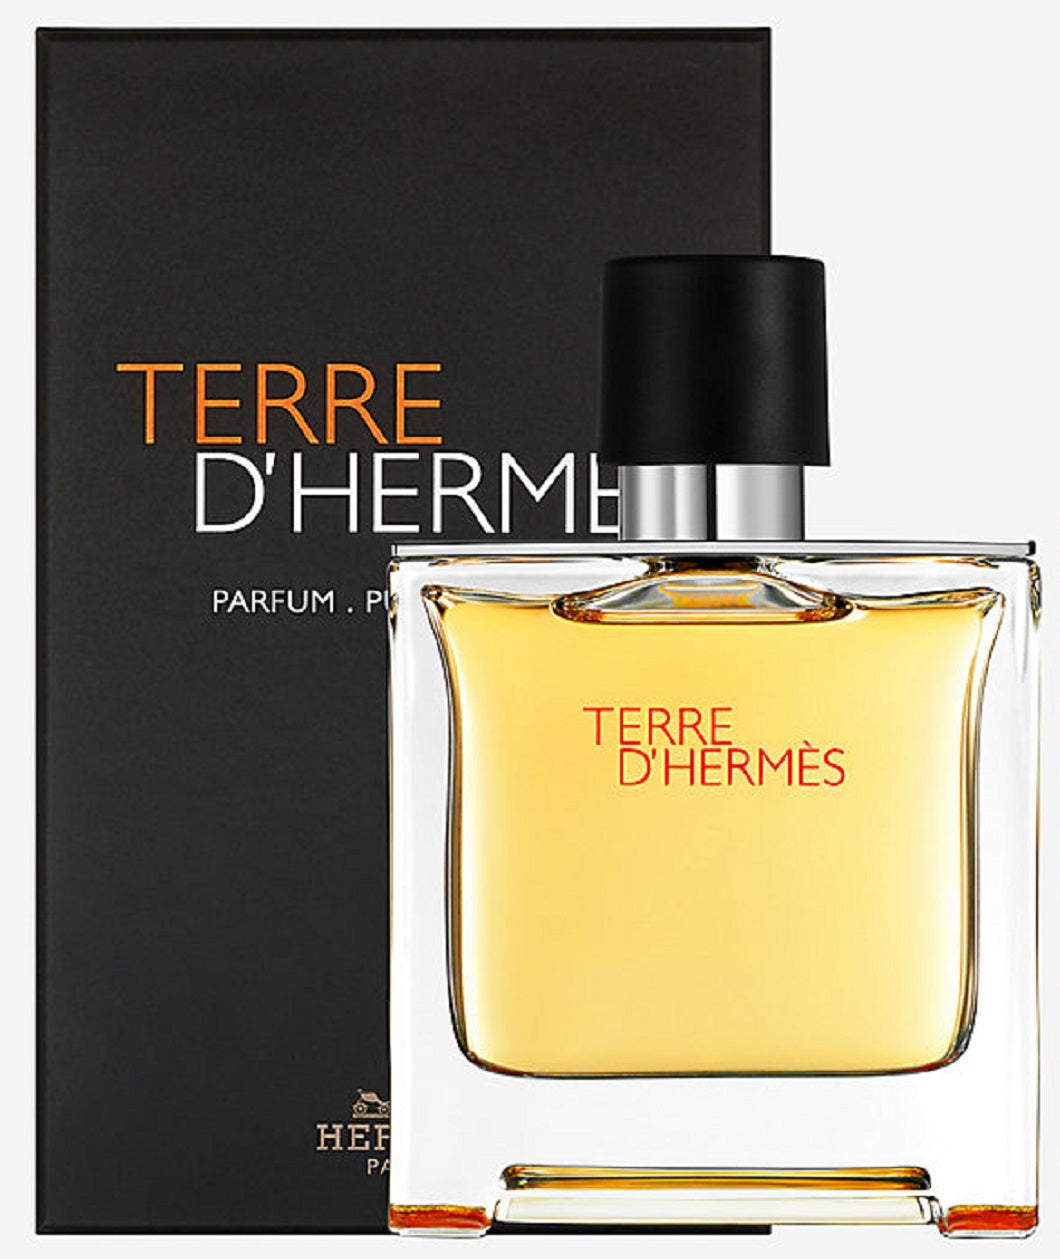 hermes terre parfum 200ml